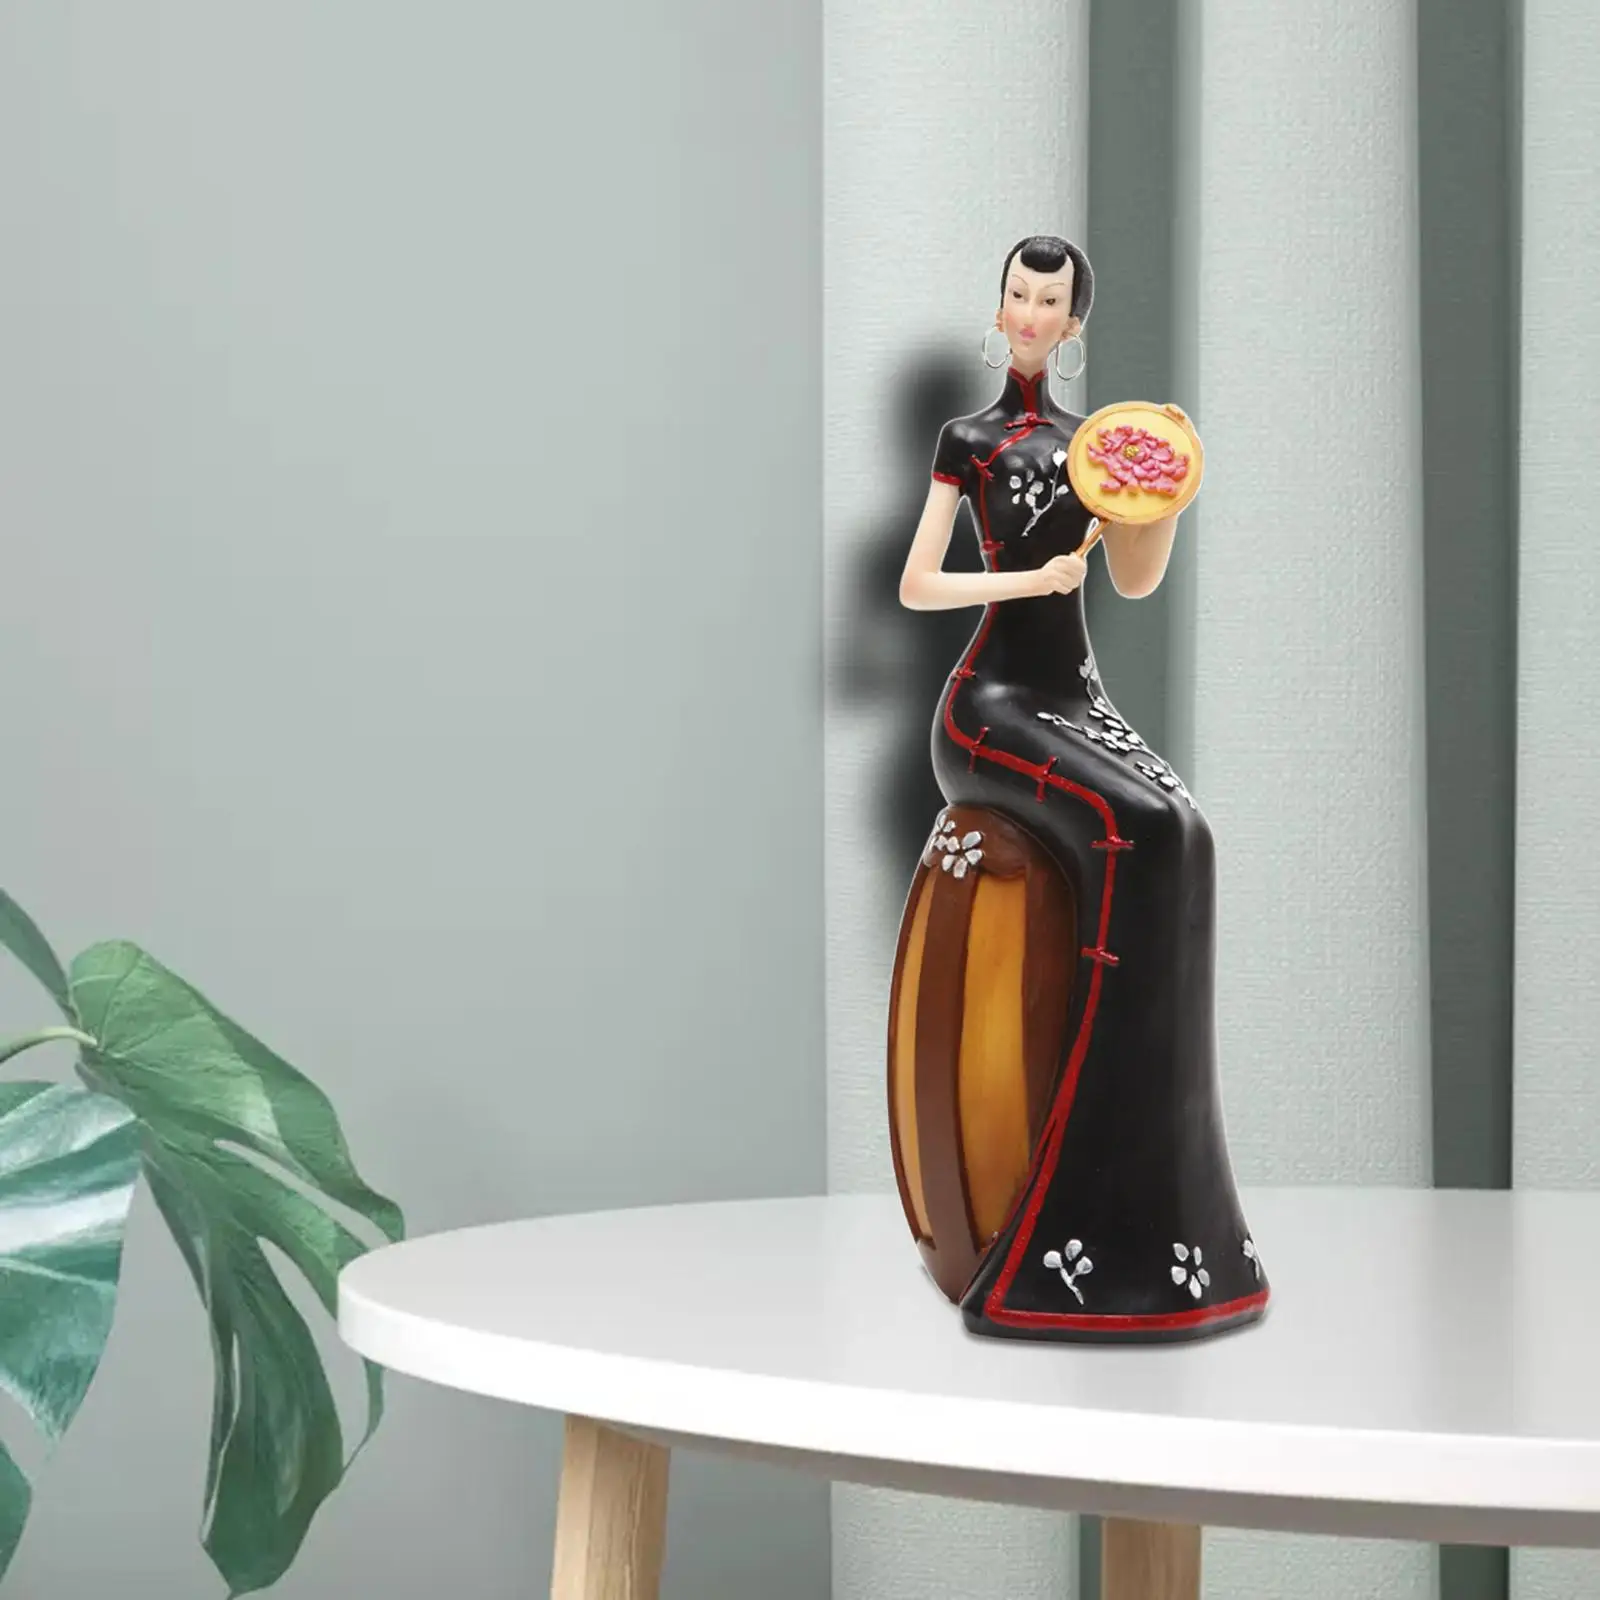 

Lady Figurine Elegance Lady Sculpture for Cabinet Living Room Desktop Home Decor